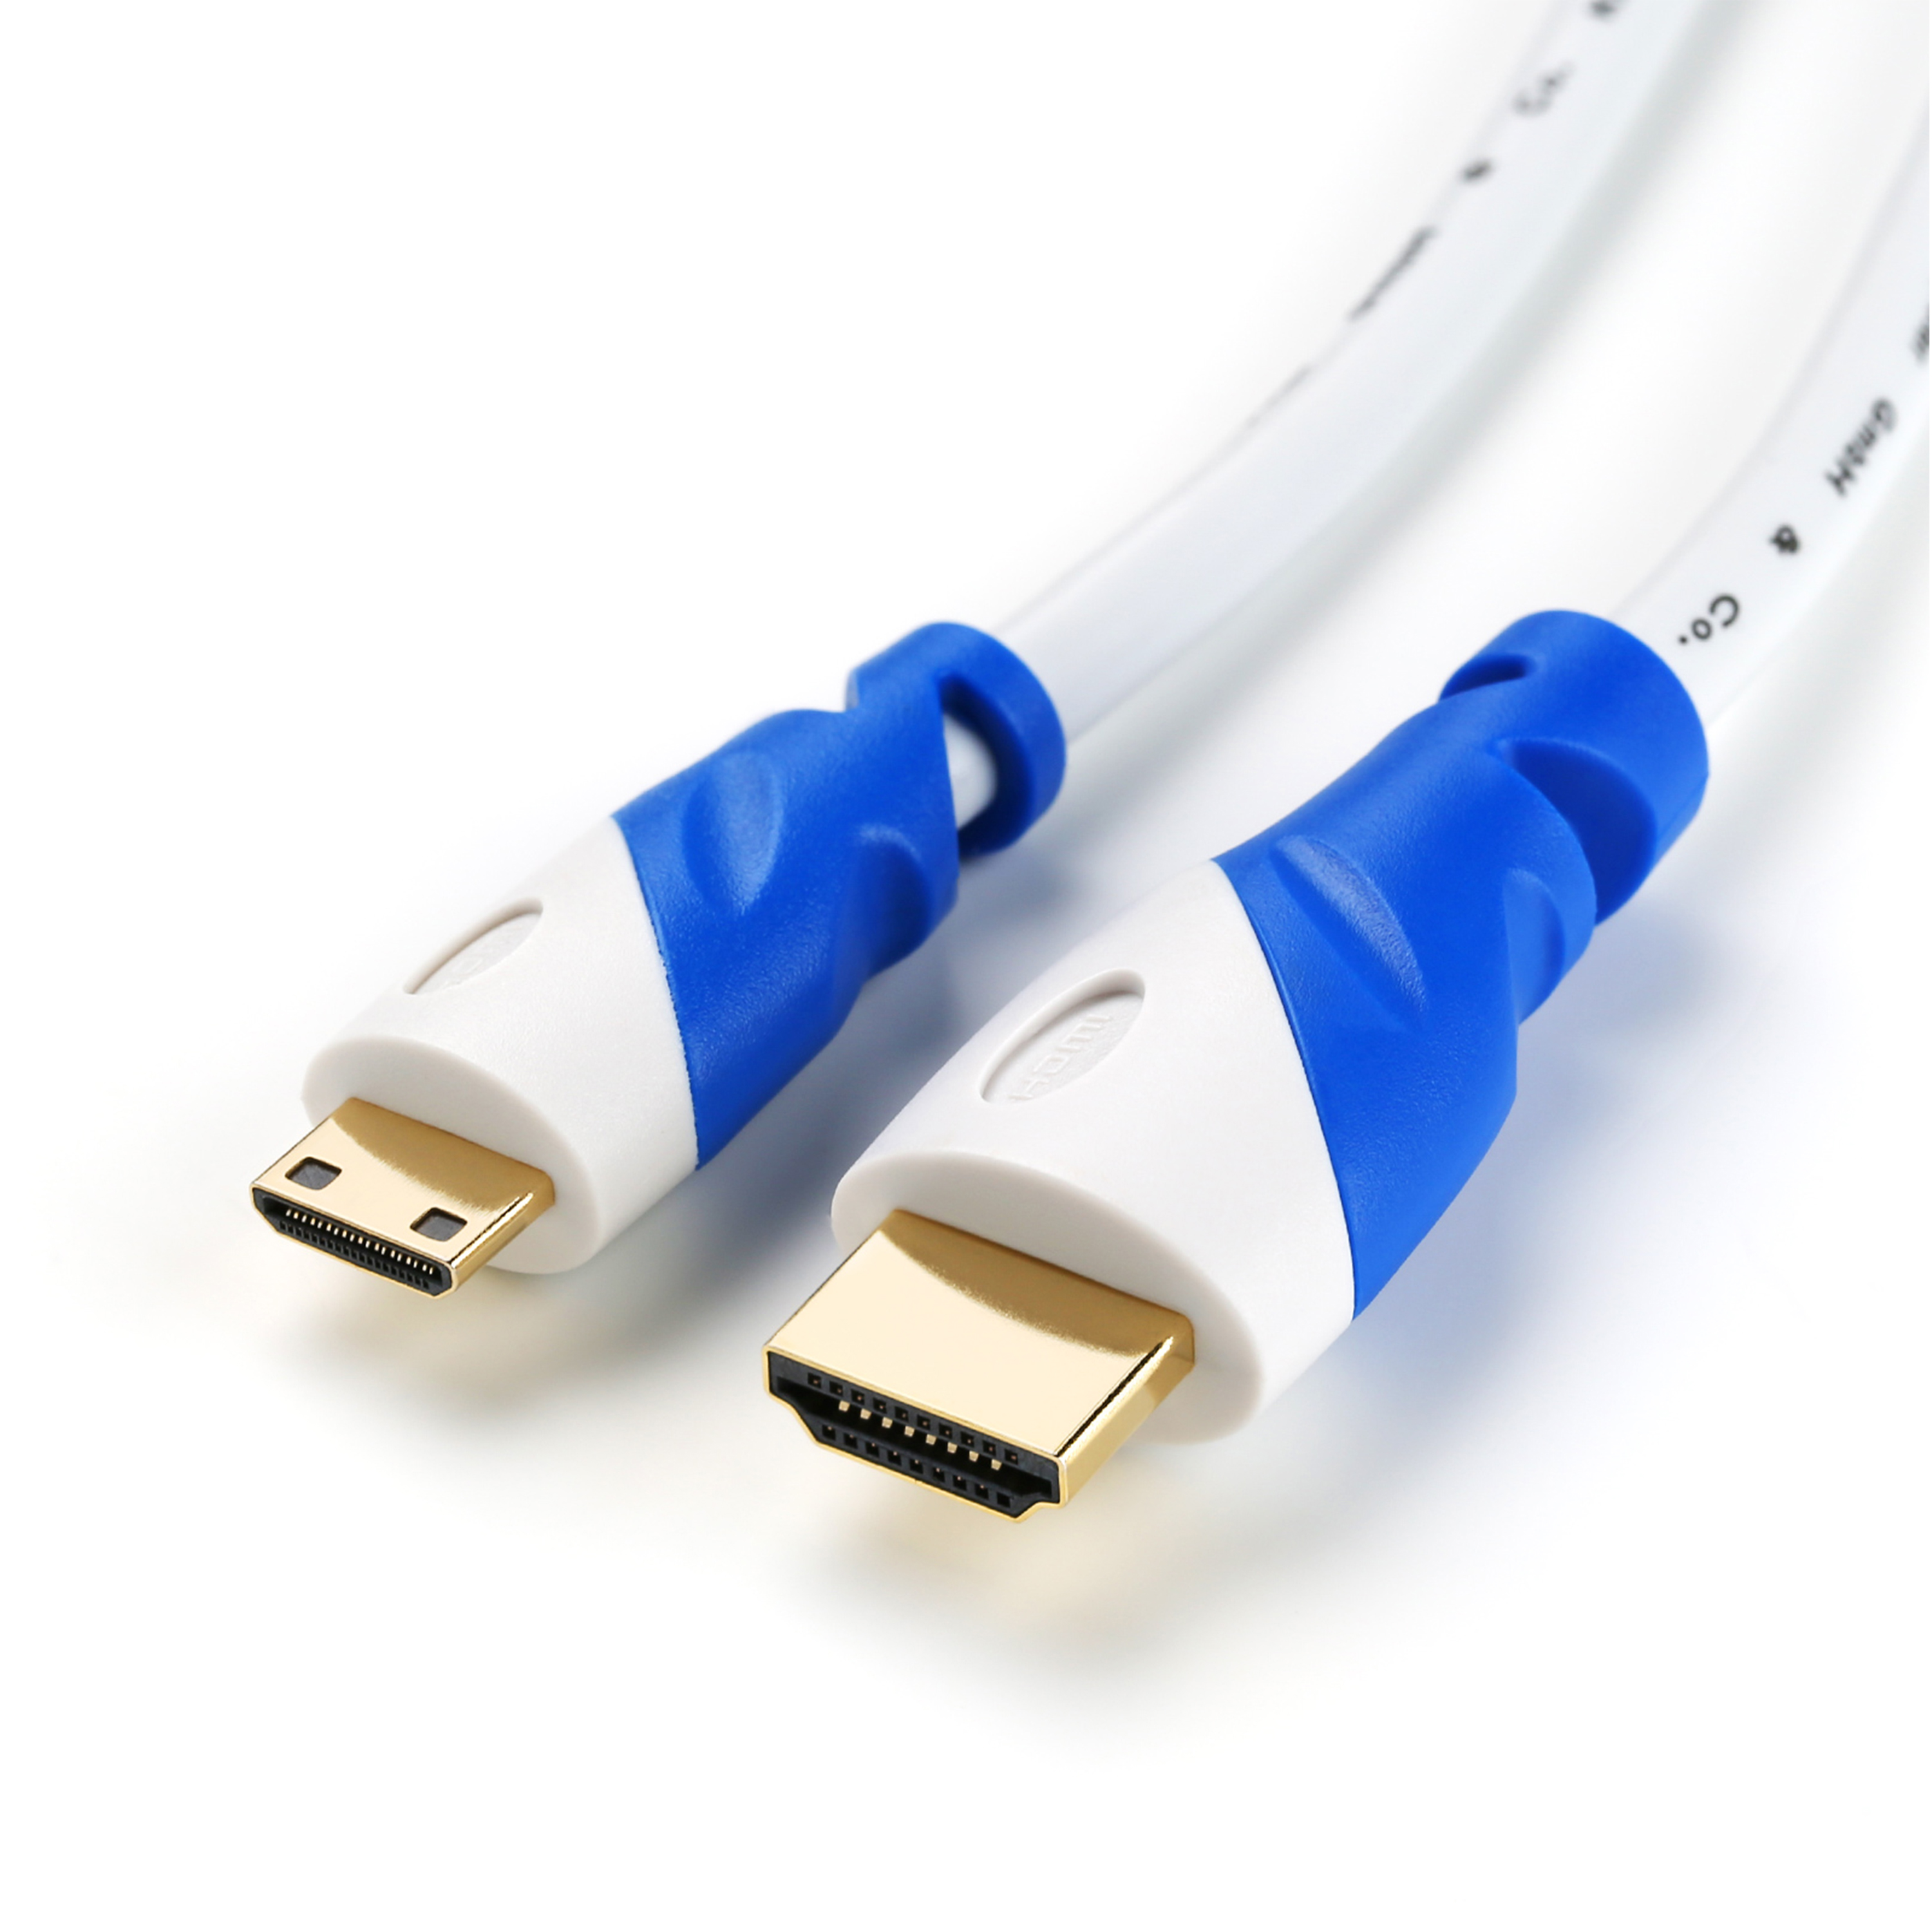 CSL HDMI 2.0 Kabel, Kabel, 2m HDMI gewinkelt, weiß/blau